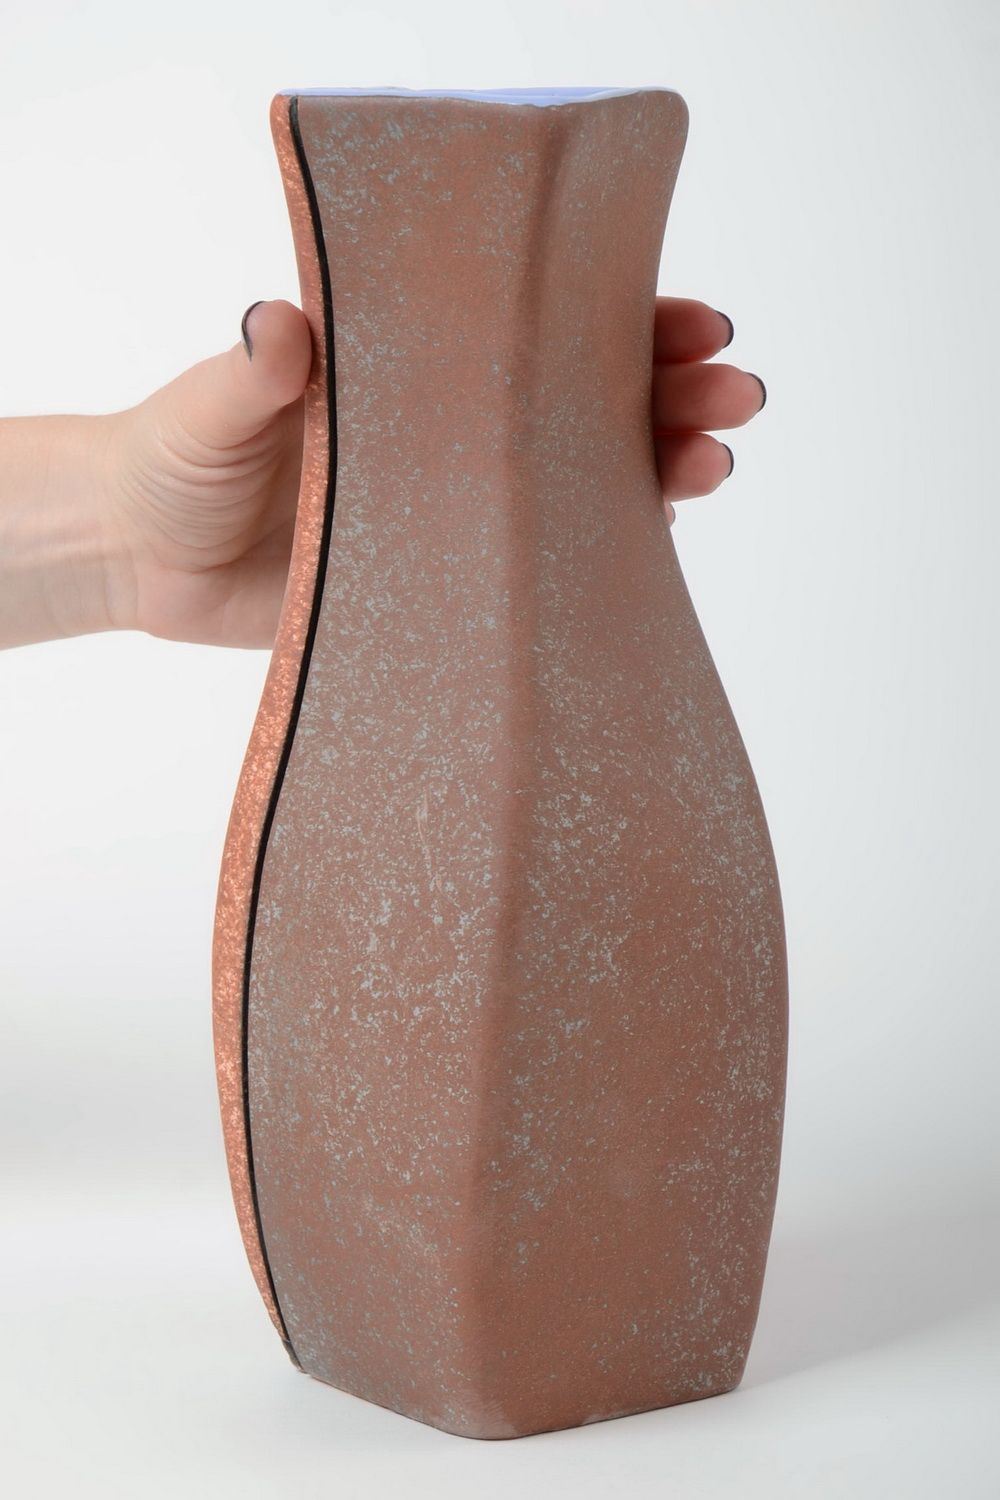 Глиняная ваза ручной работы с росписью пигментами красивая для декора дома 2.2 л фото 5